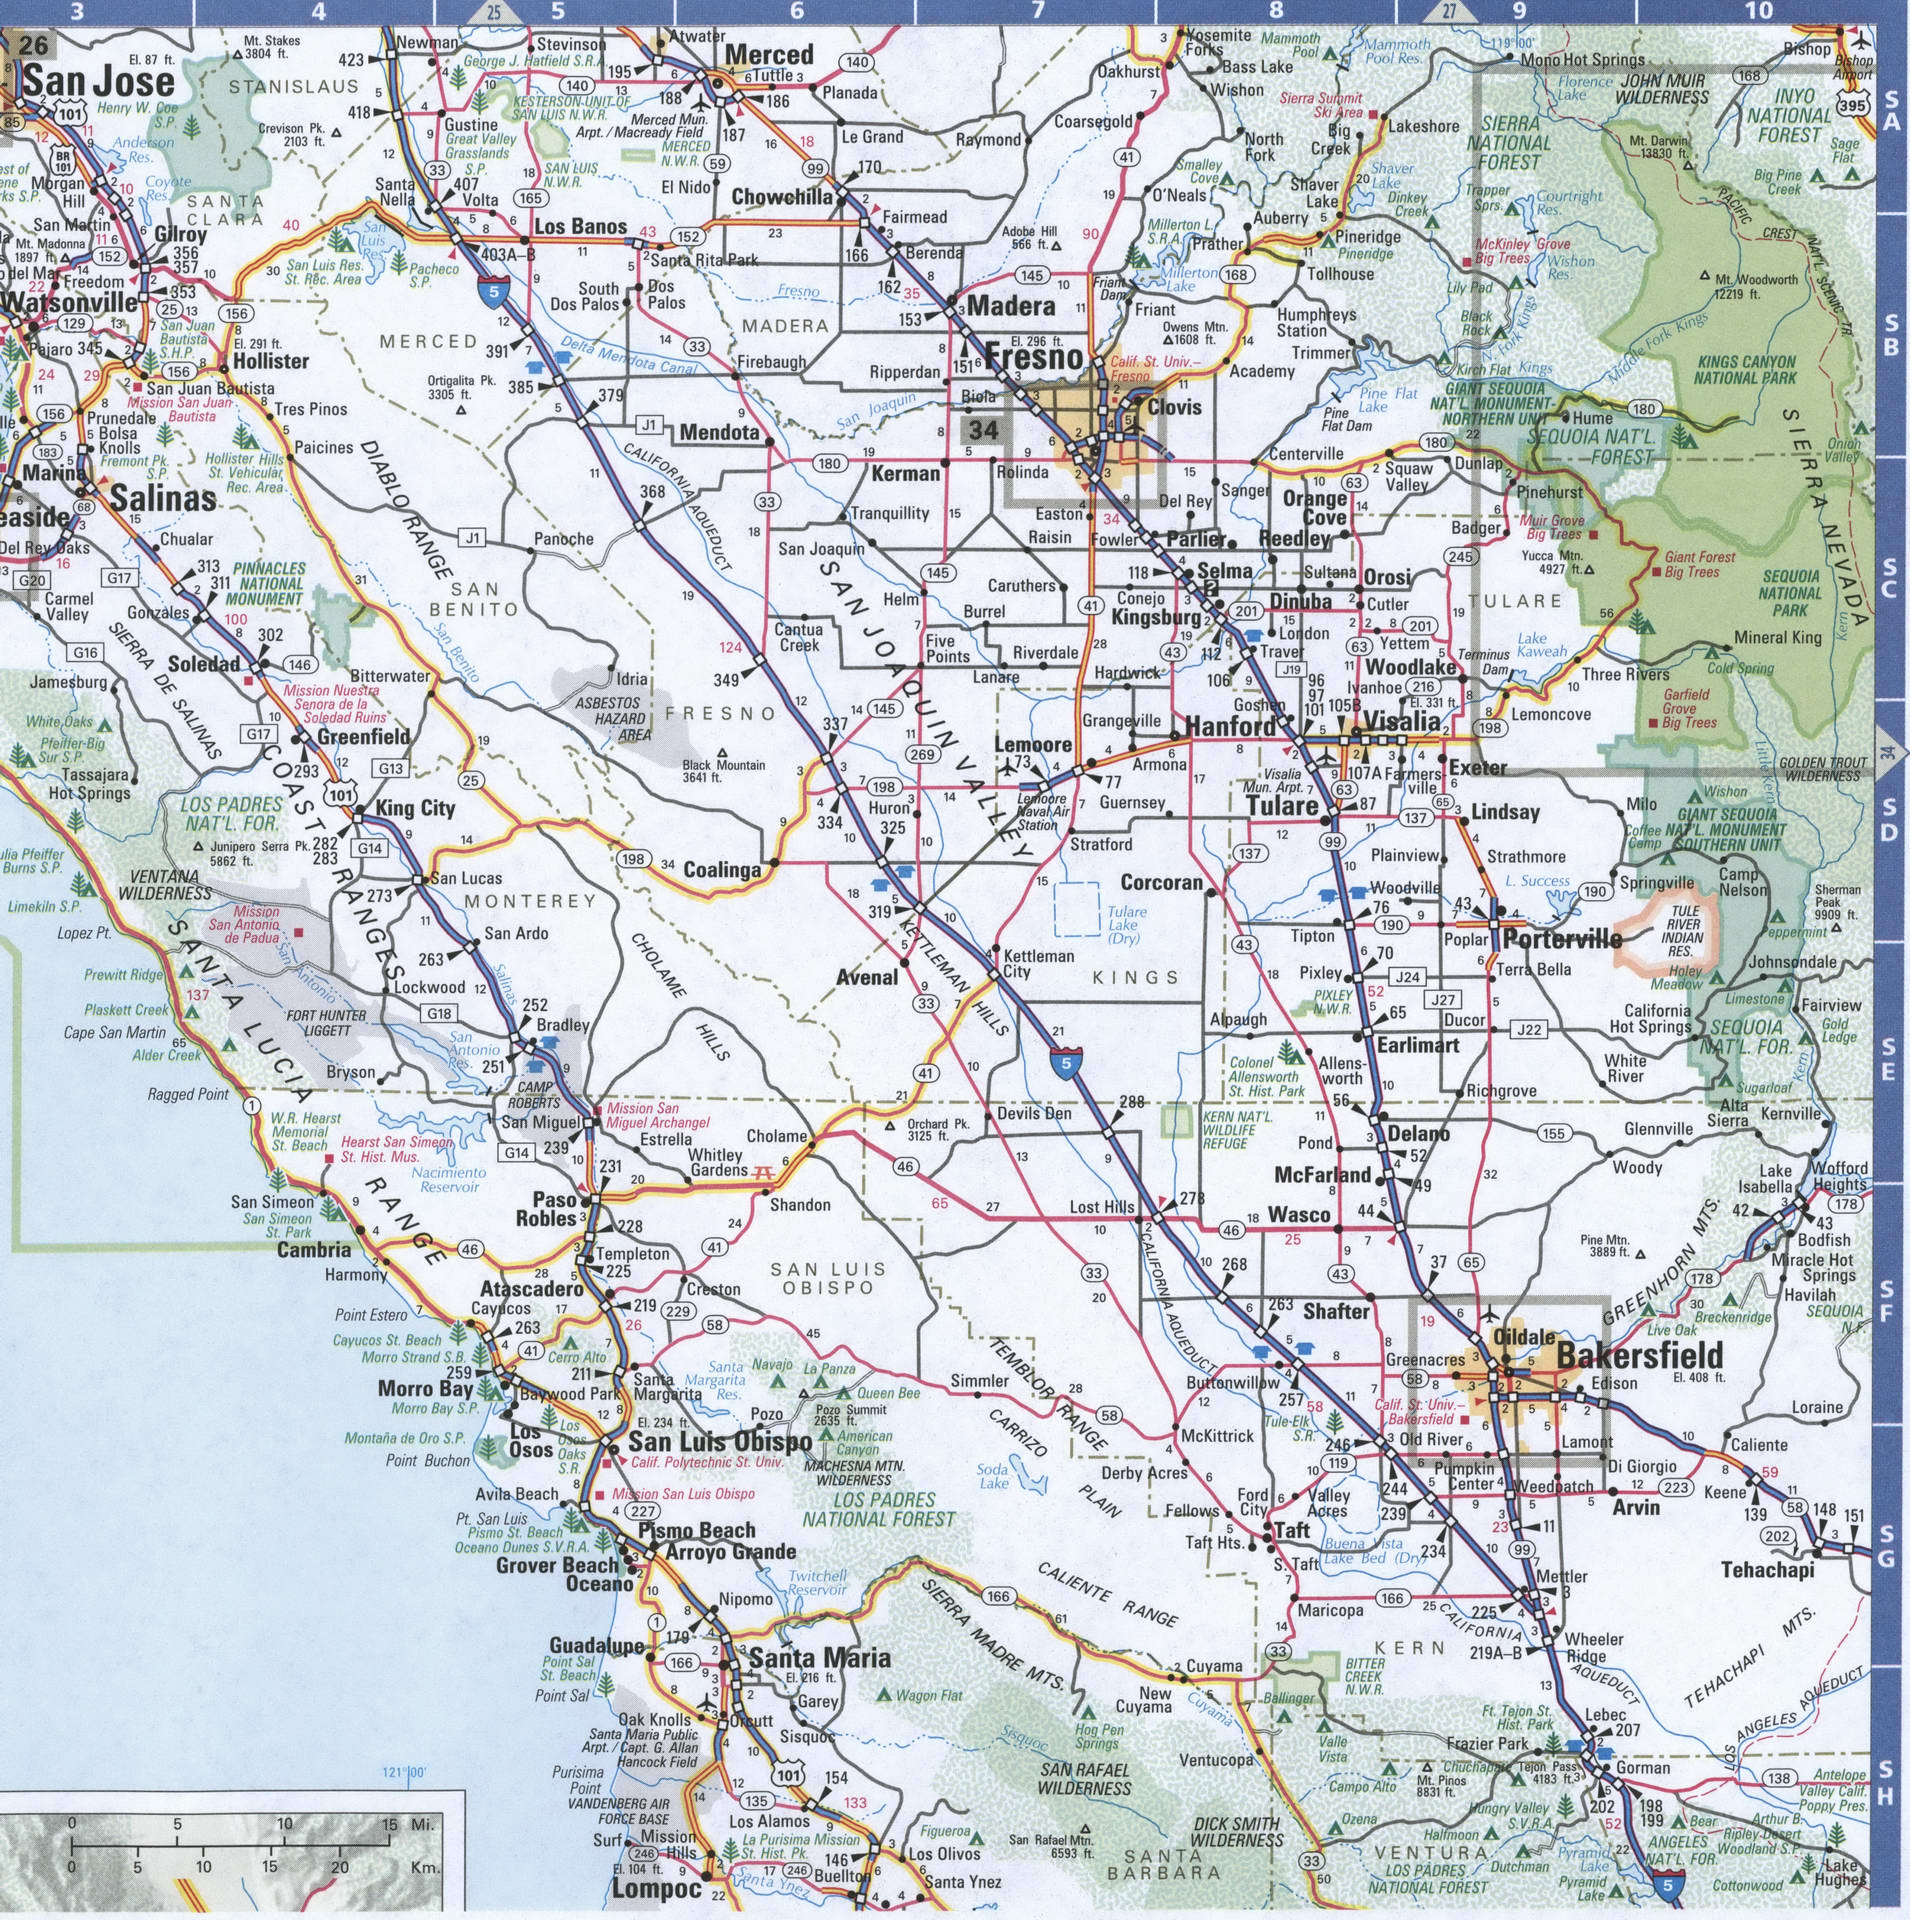 San Joaquin Valley region California map